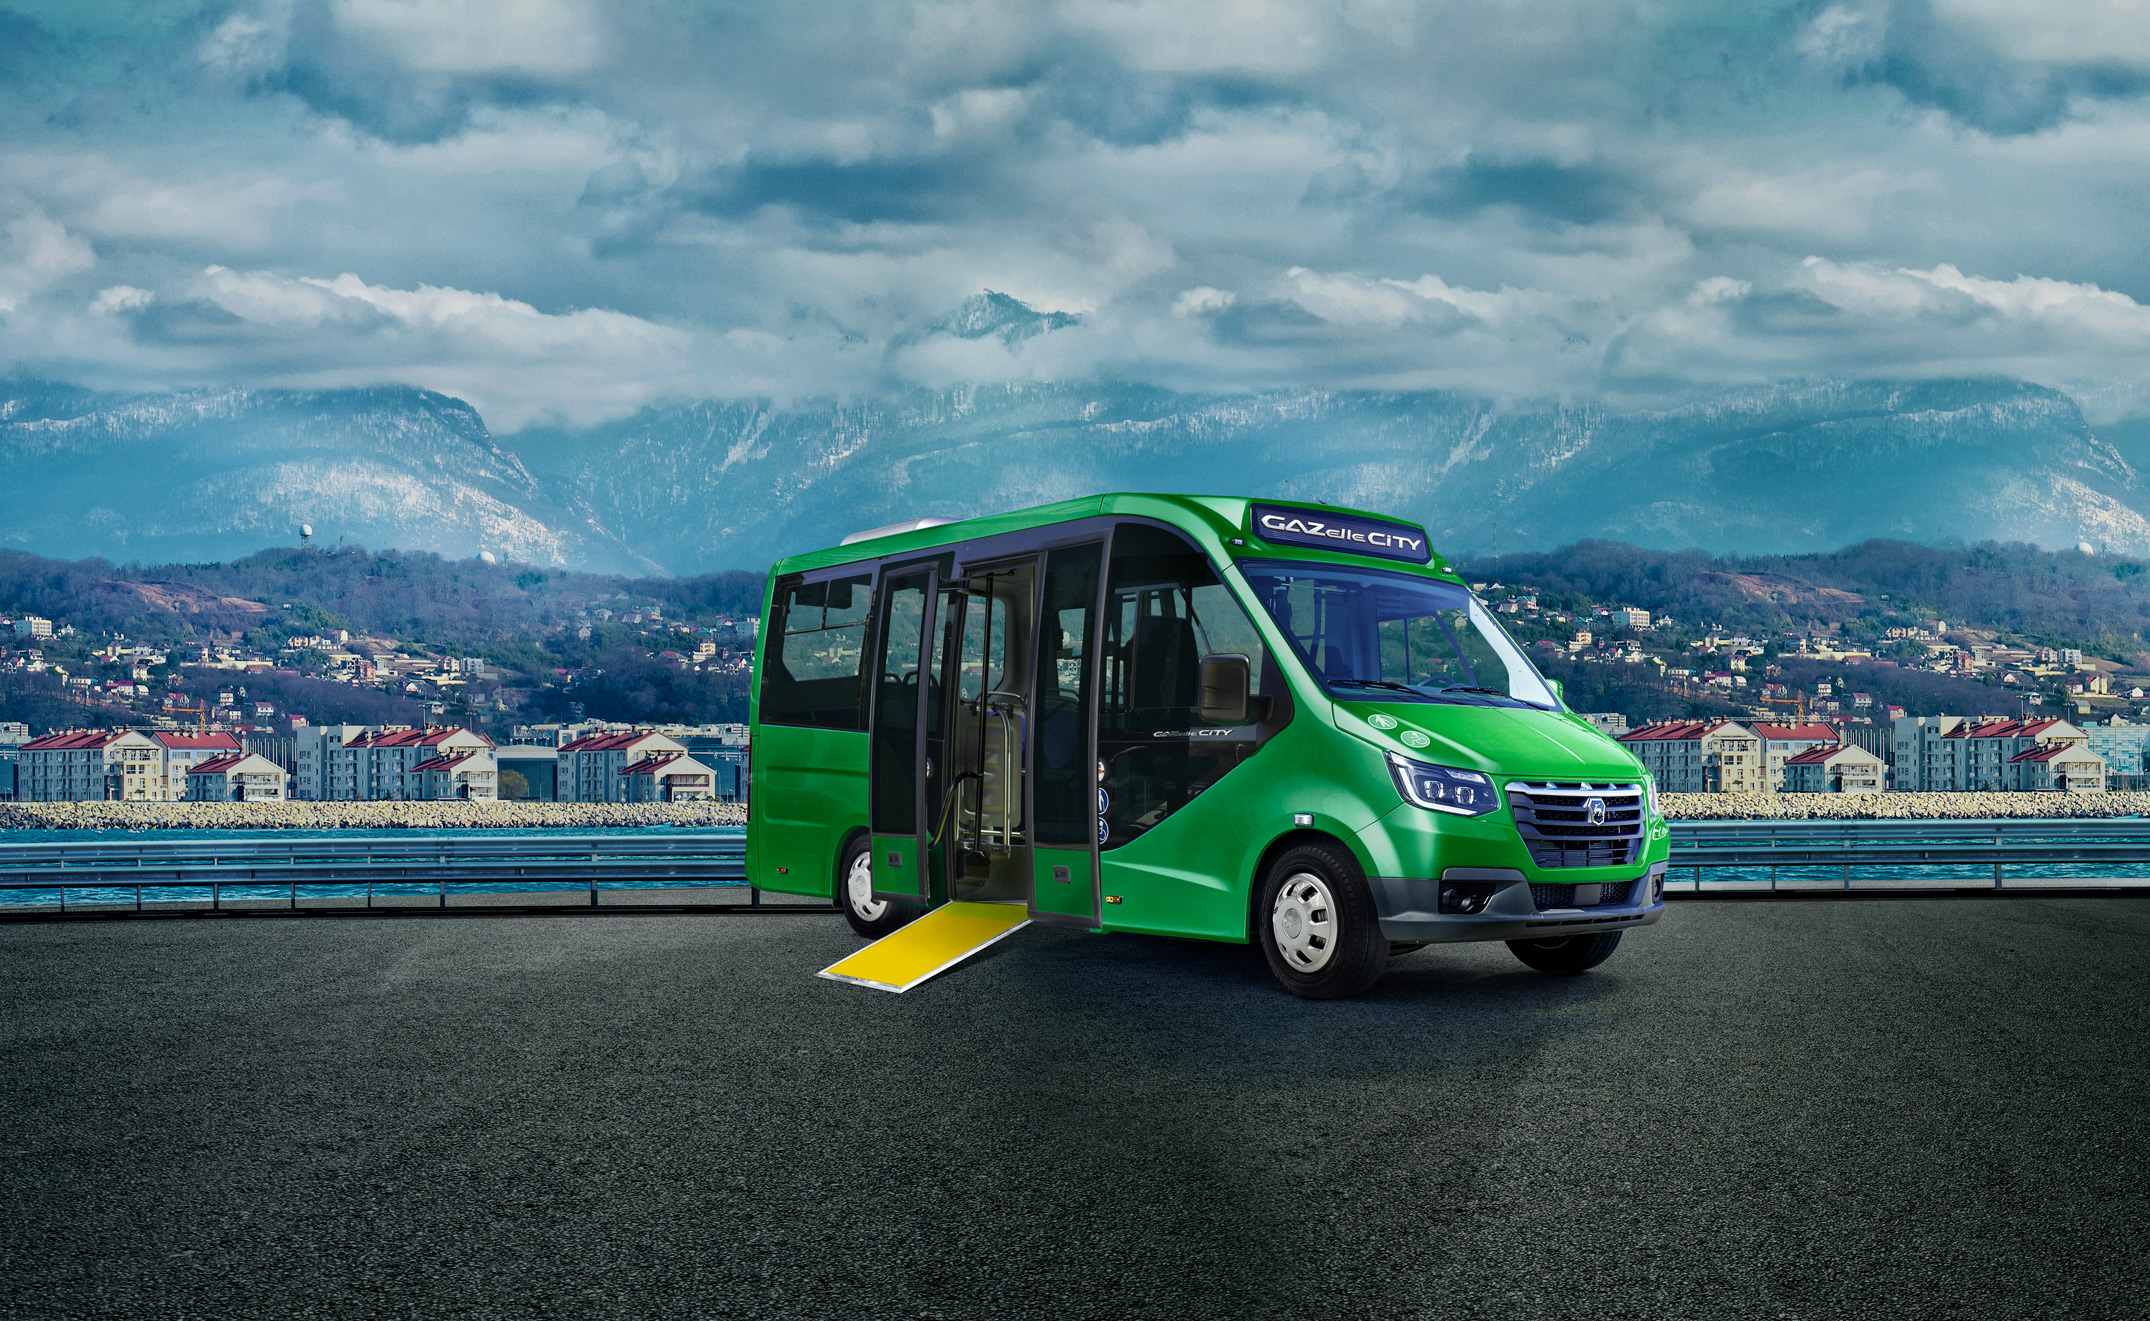 Автобус «ГАЗель City» признан лучшим коммерческим автомобилем 2020 года